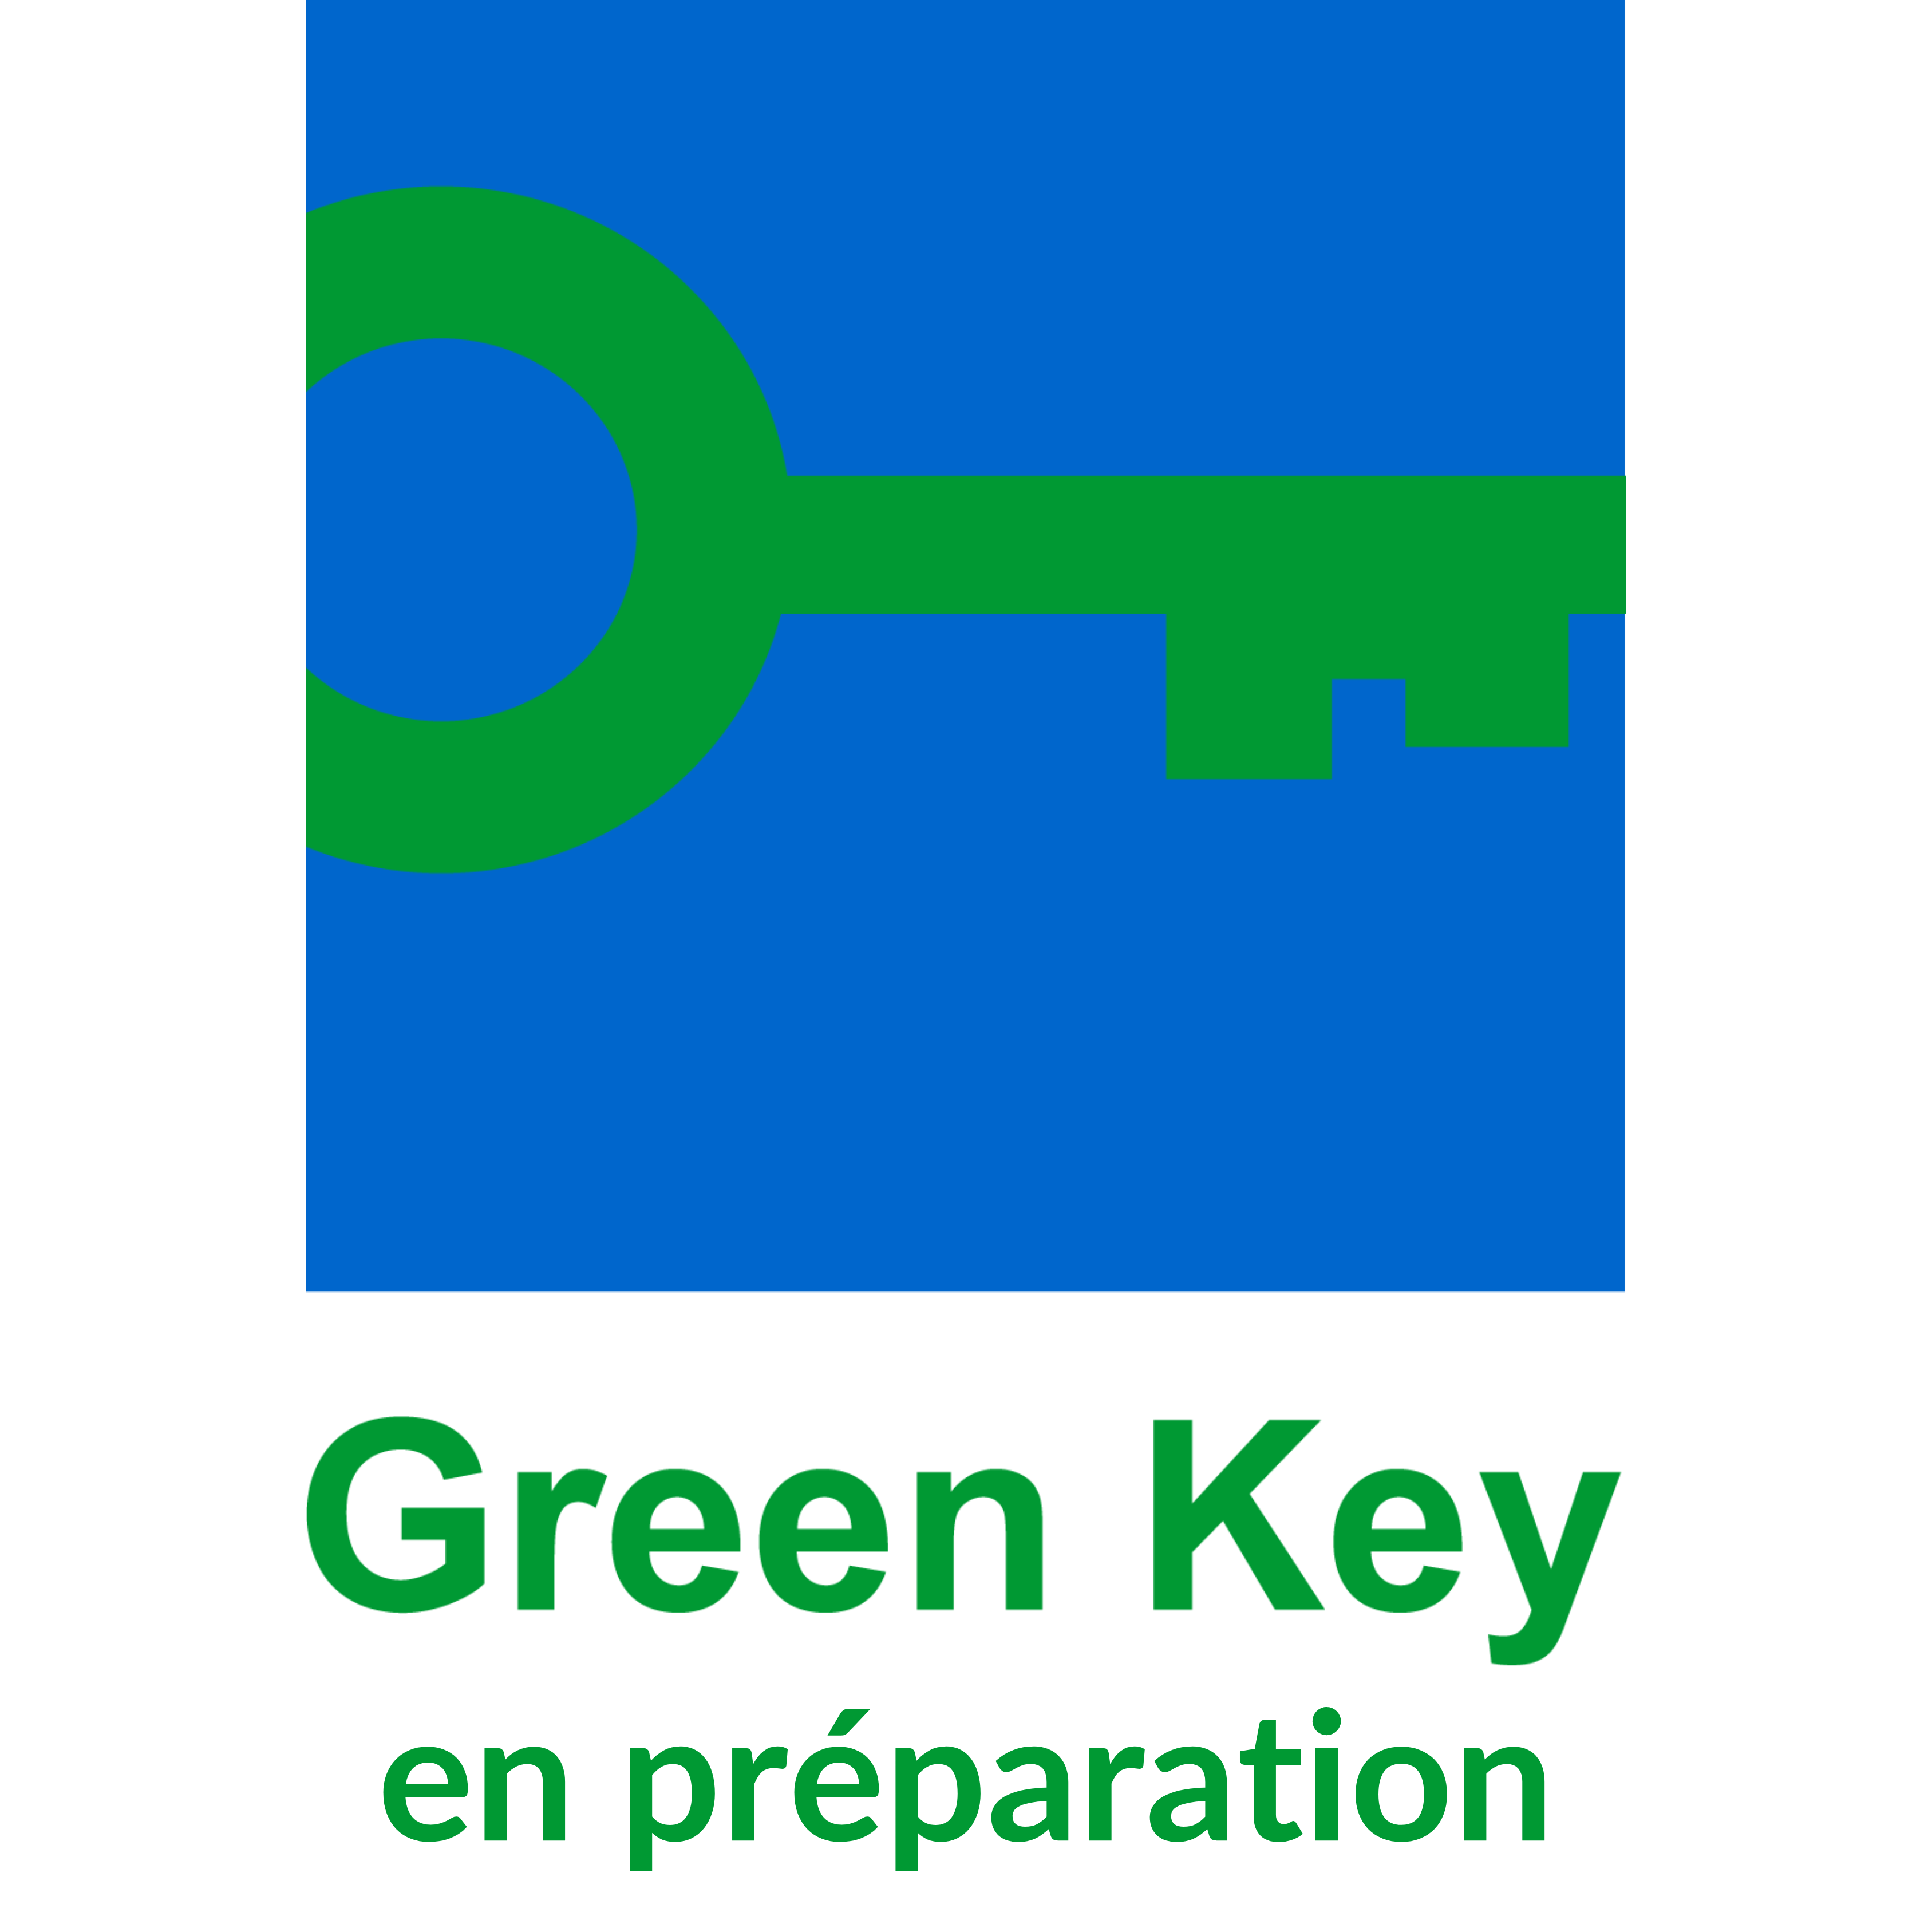 Green Key en préparation